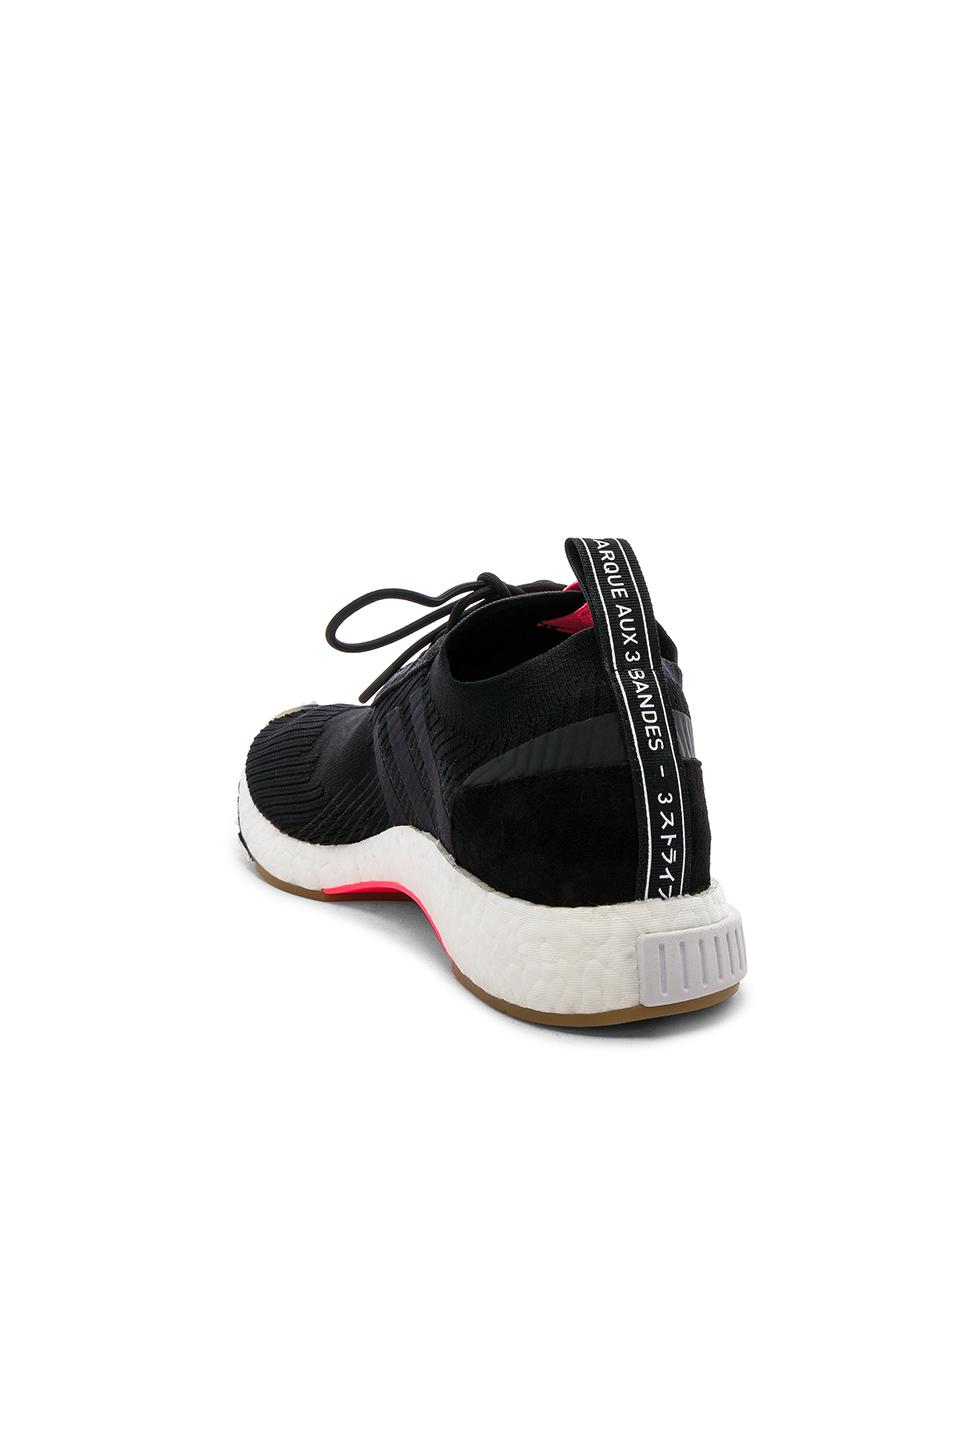 Adidas NMD XR1 Duck Camo Sneaker Bar Detroit